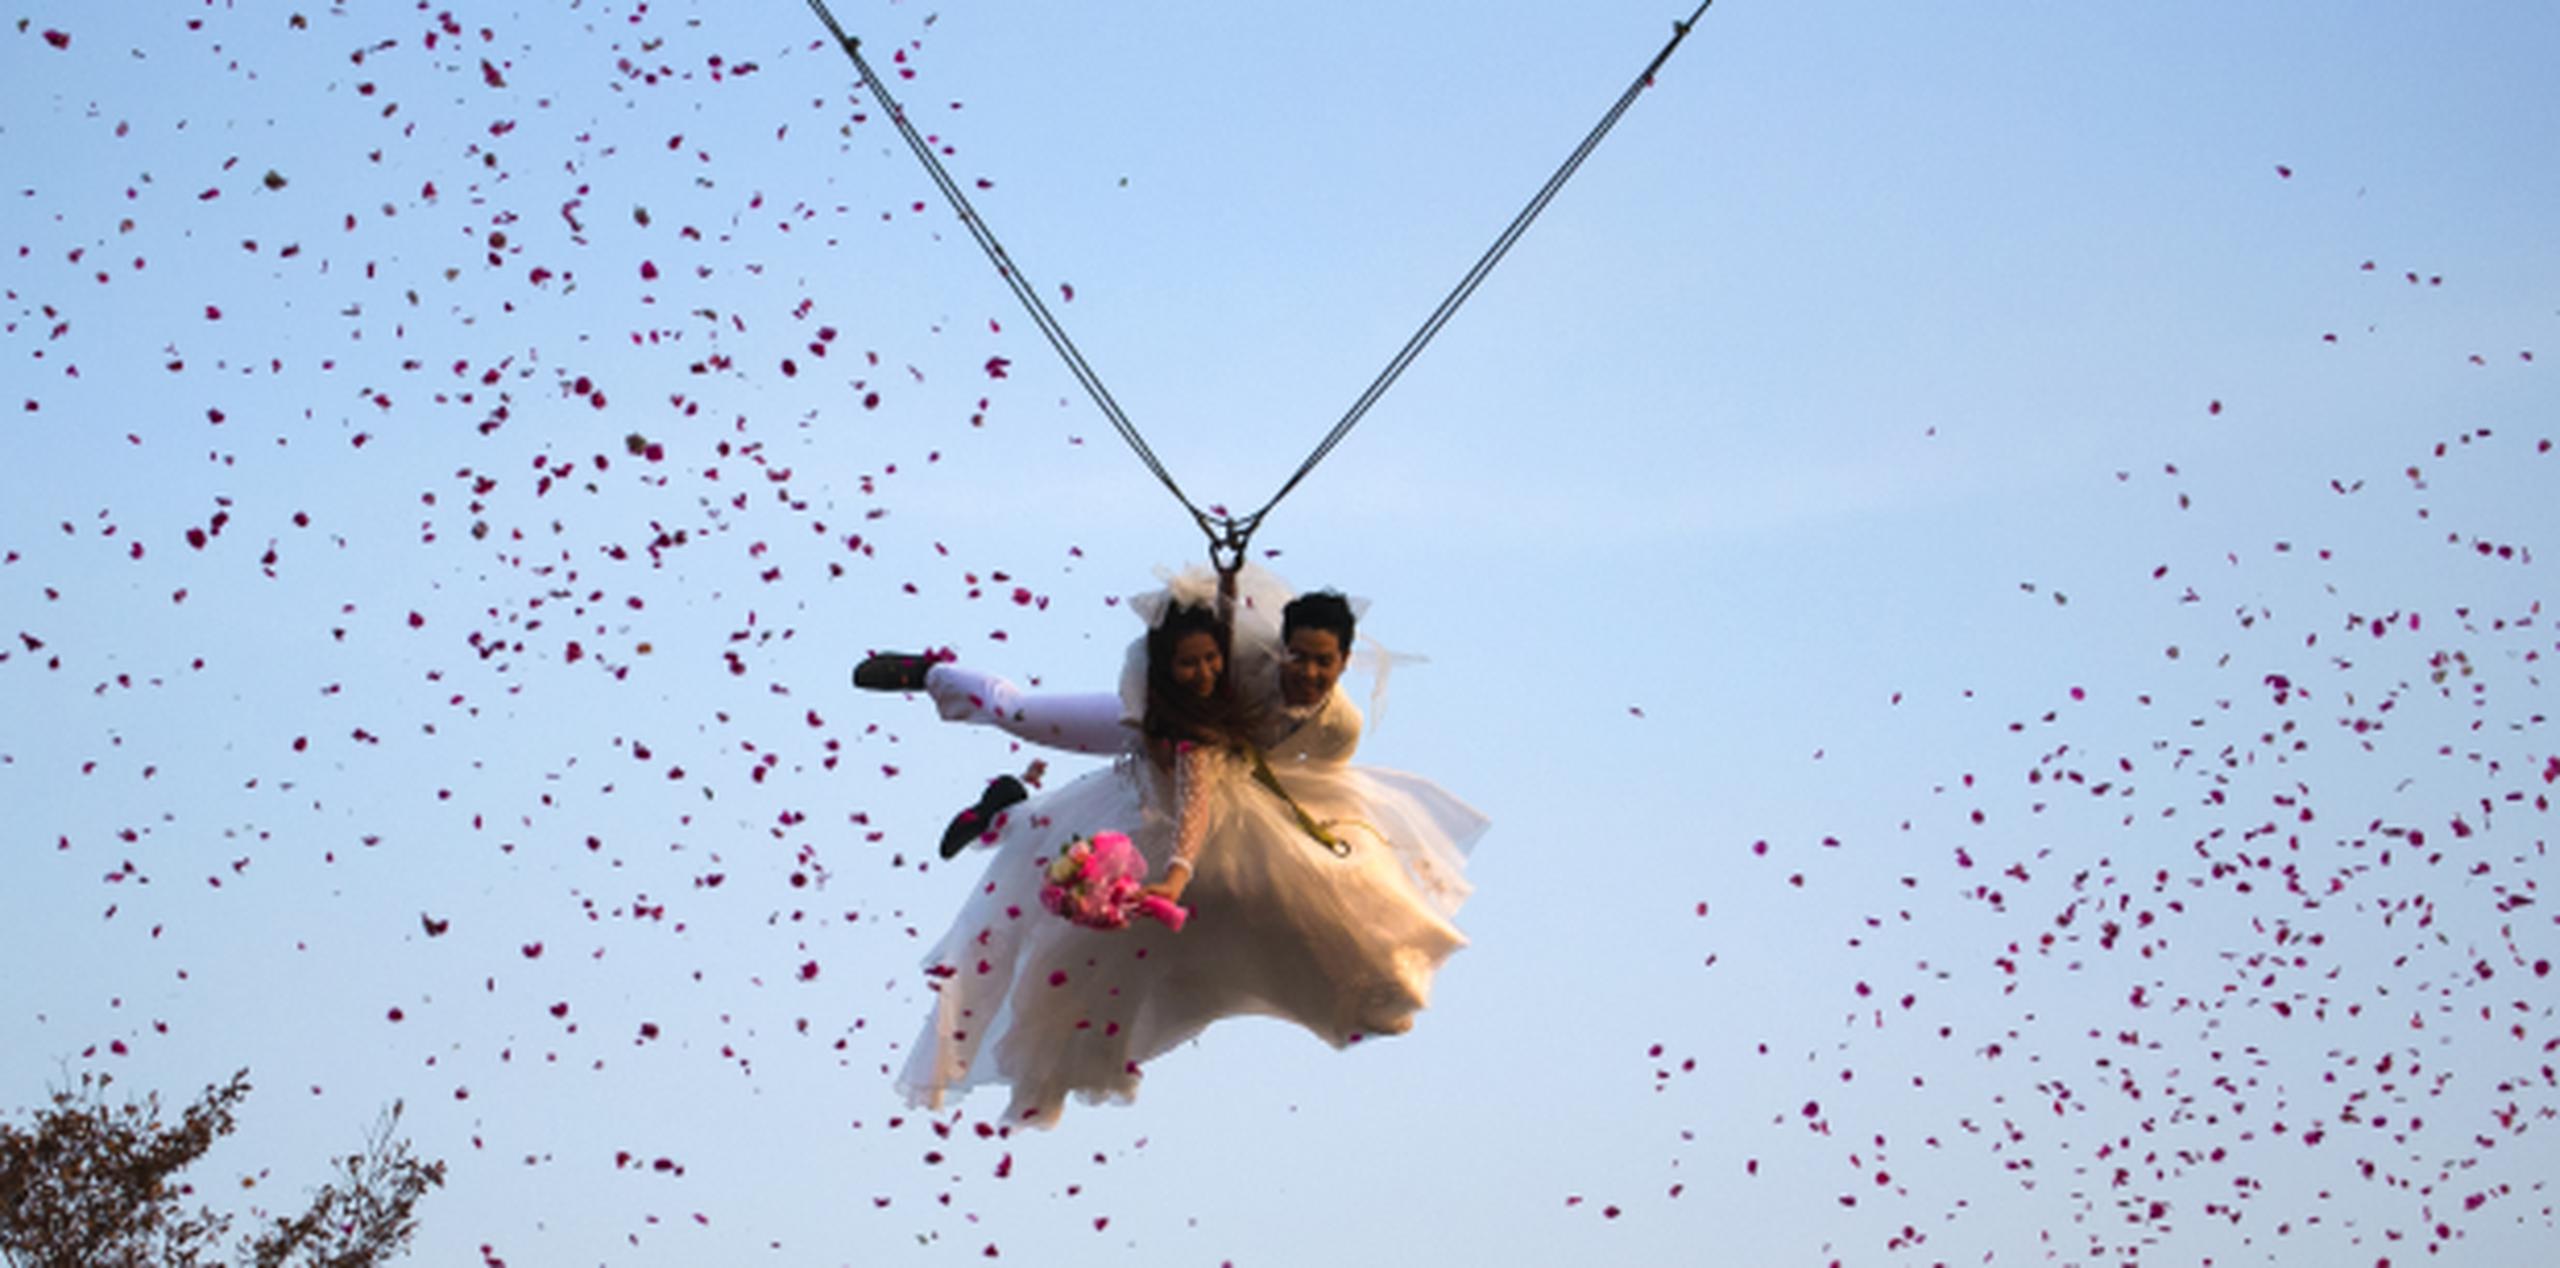 Mientras en Pakistán reina la duda, en Tailandia varias parejas se casaron como parte de un evento relacionado a San Valentín que incluyó lanzarse en una especie de paracaídas. (AP)